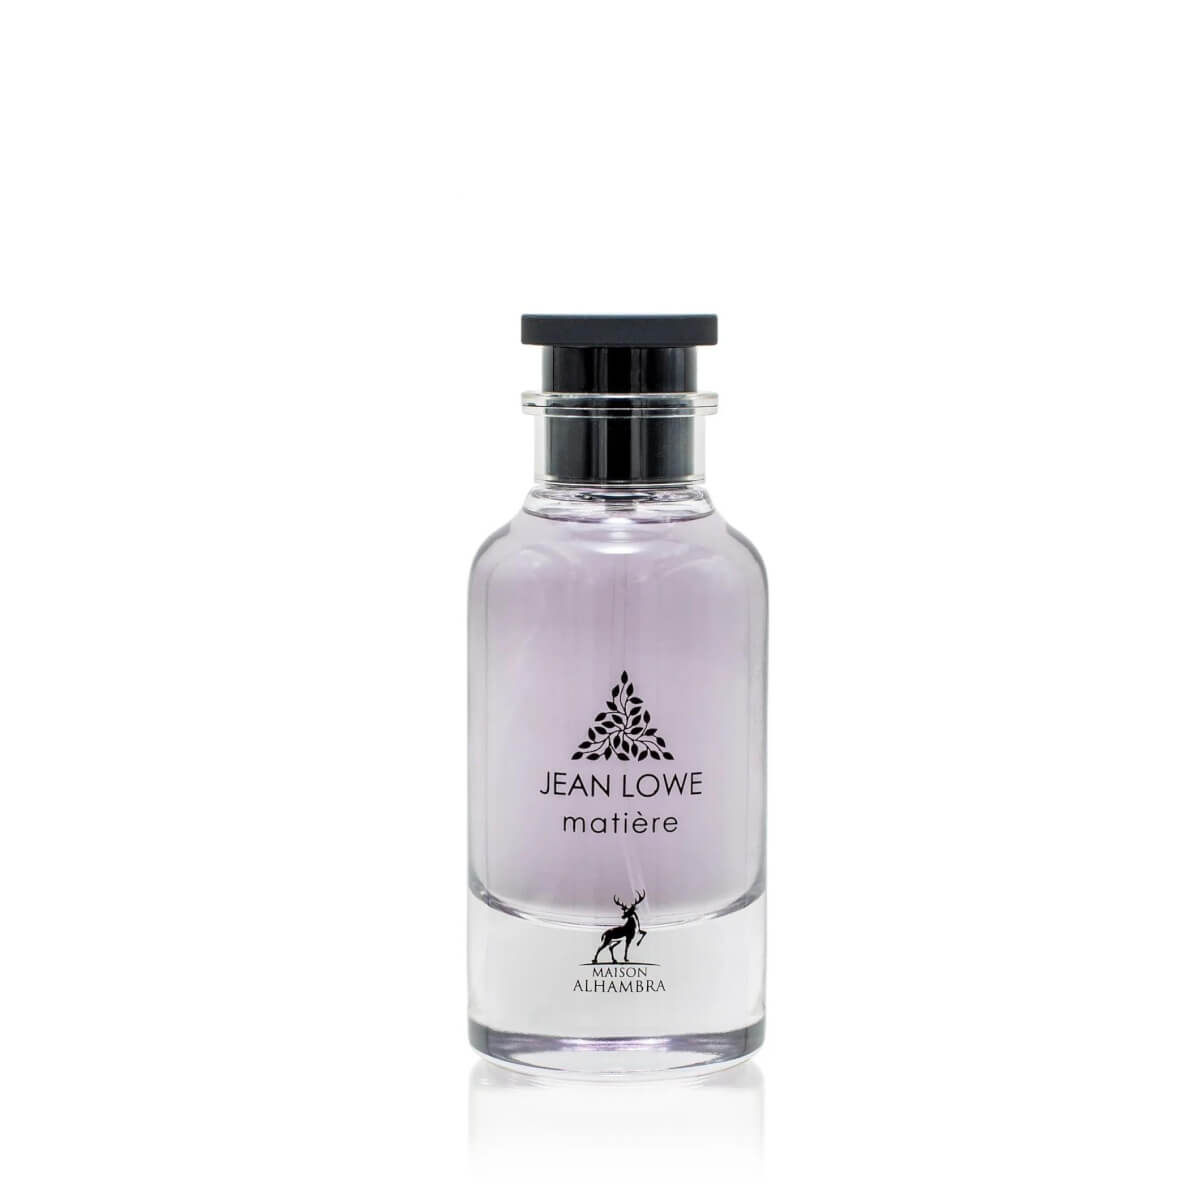 Jean Lowe Matiere Perfume Eau De Parfum 100Ml By Maison Alhambra Lattafa (Inspired By Louis Vuitton Matiere Noire)